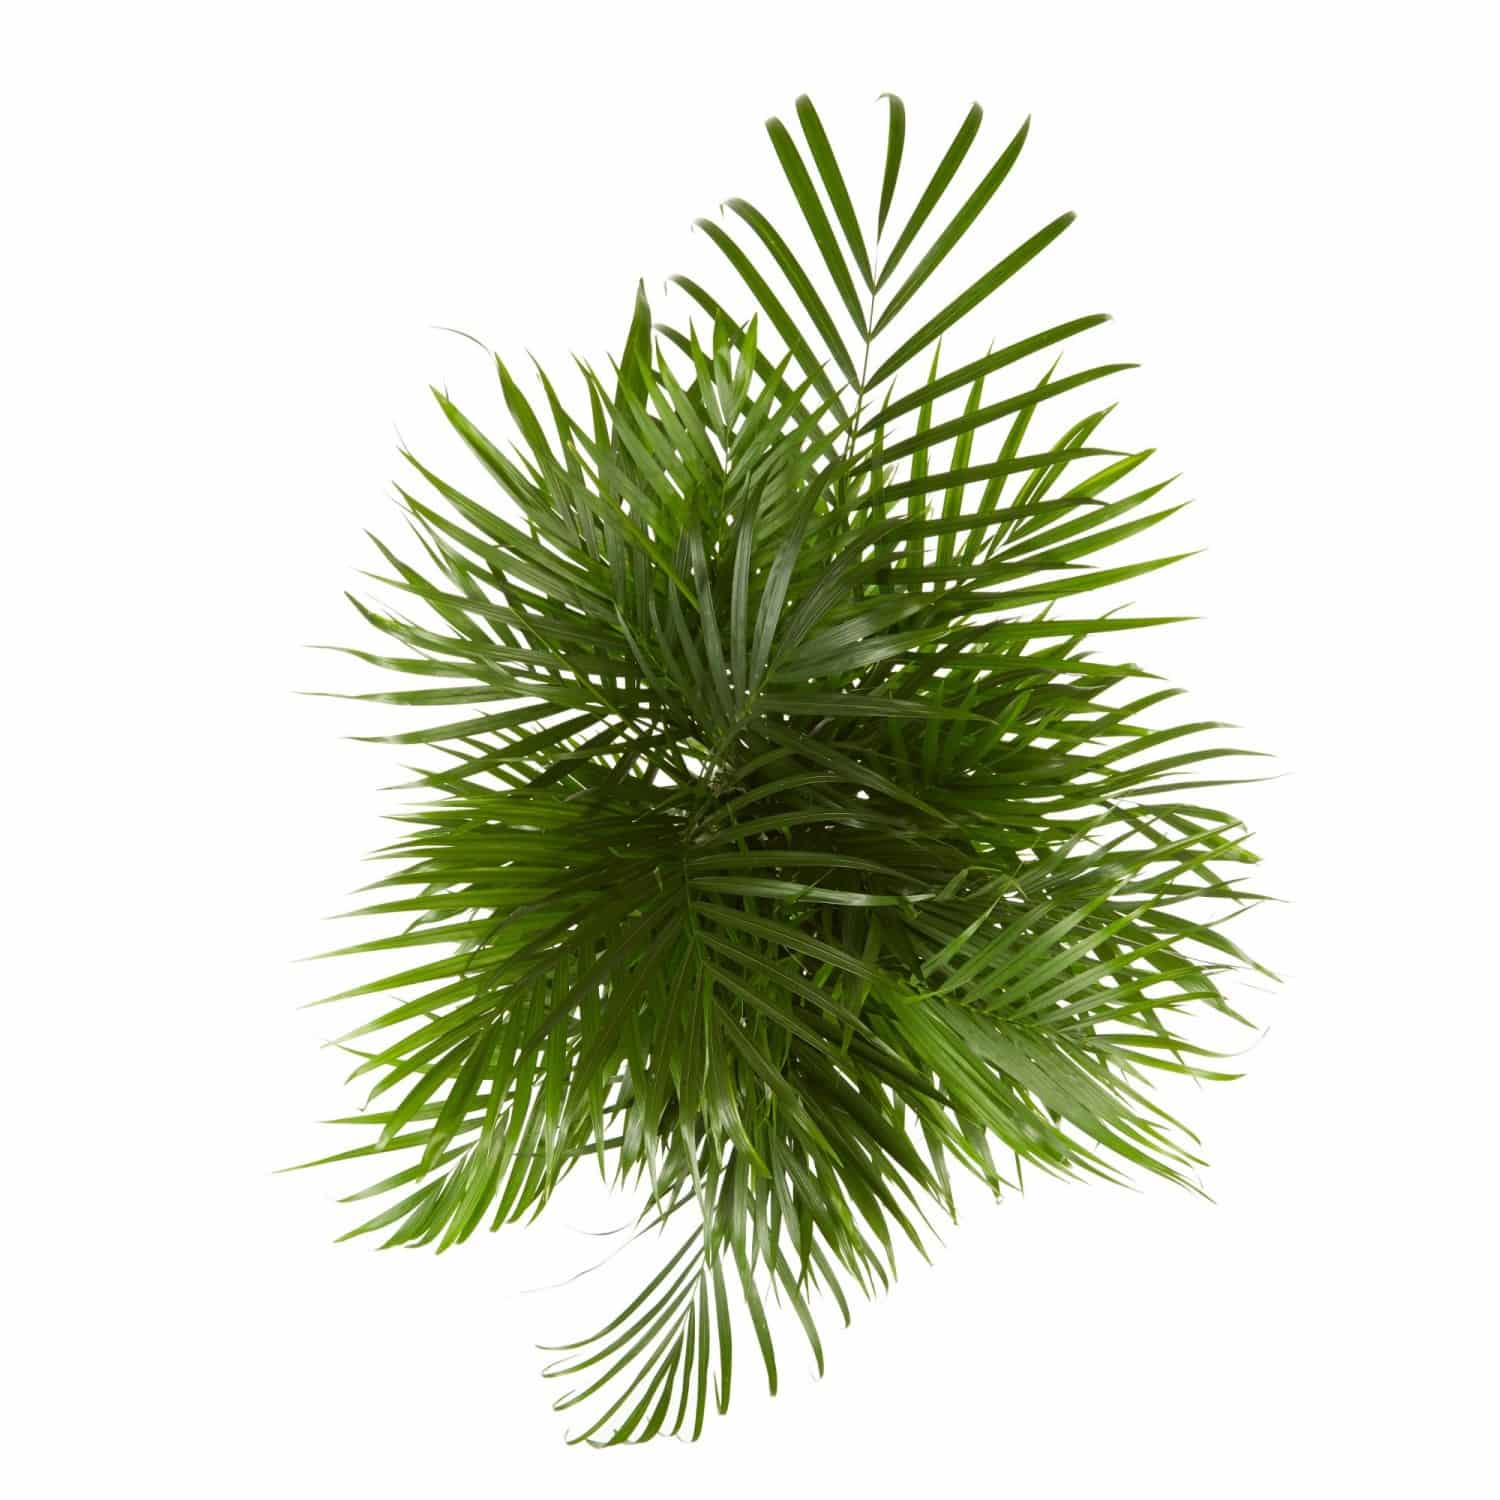 Dypsis lutescens Eco - Areca-Palme 24 cm Topf